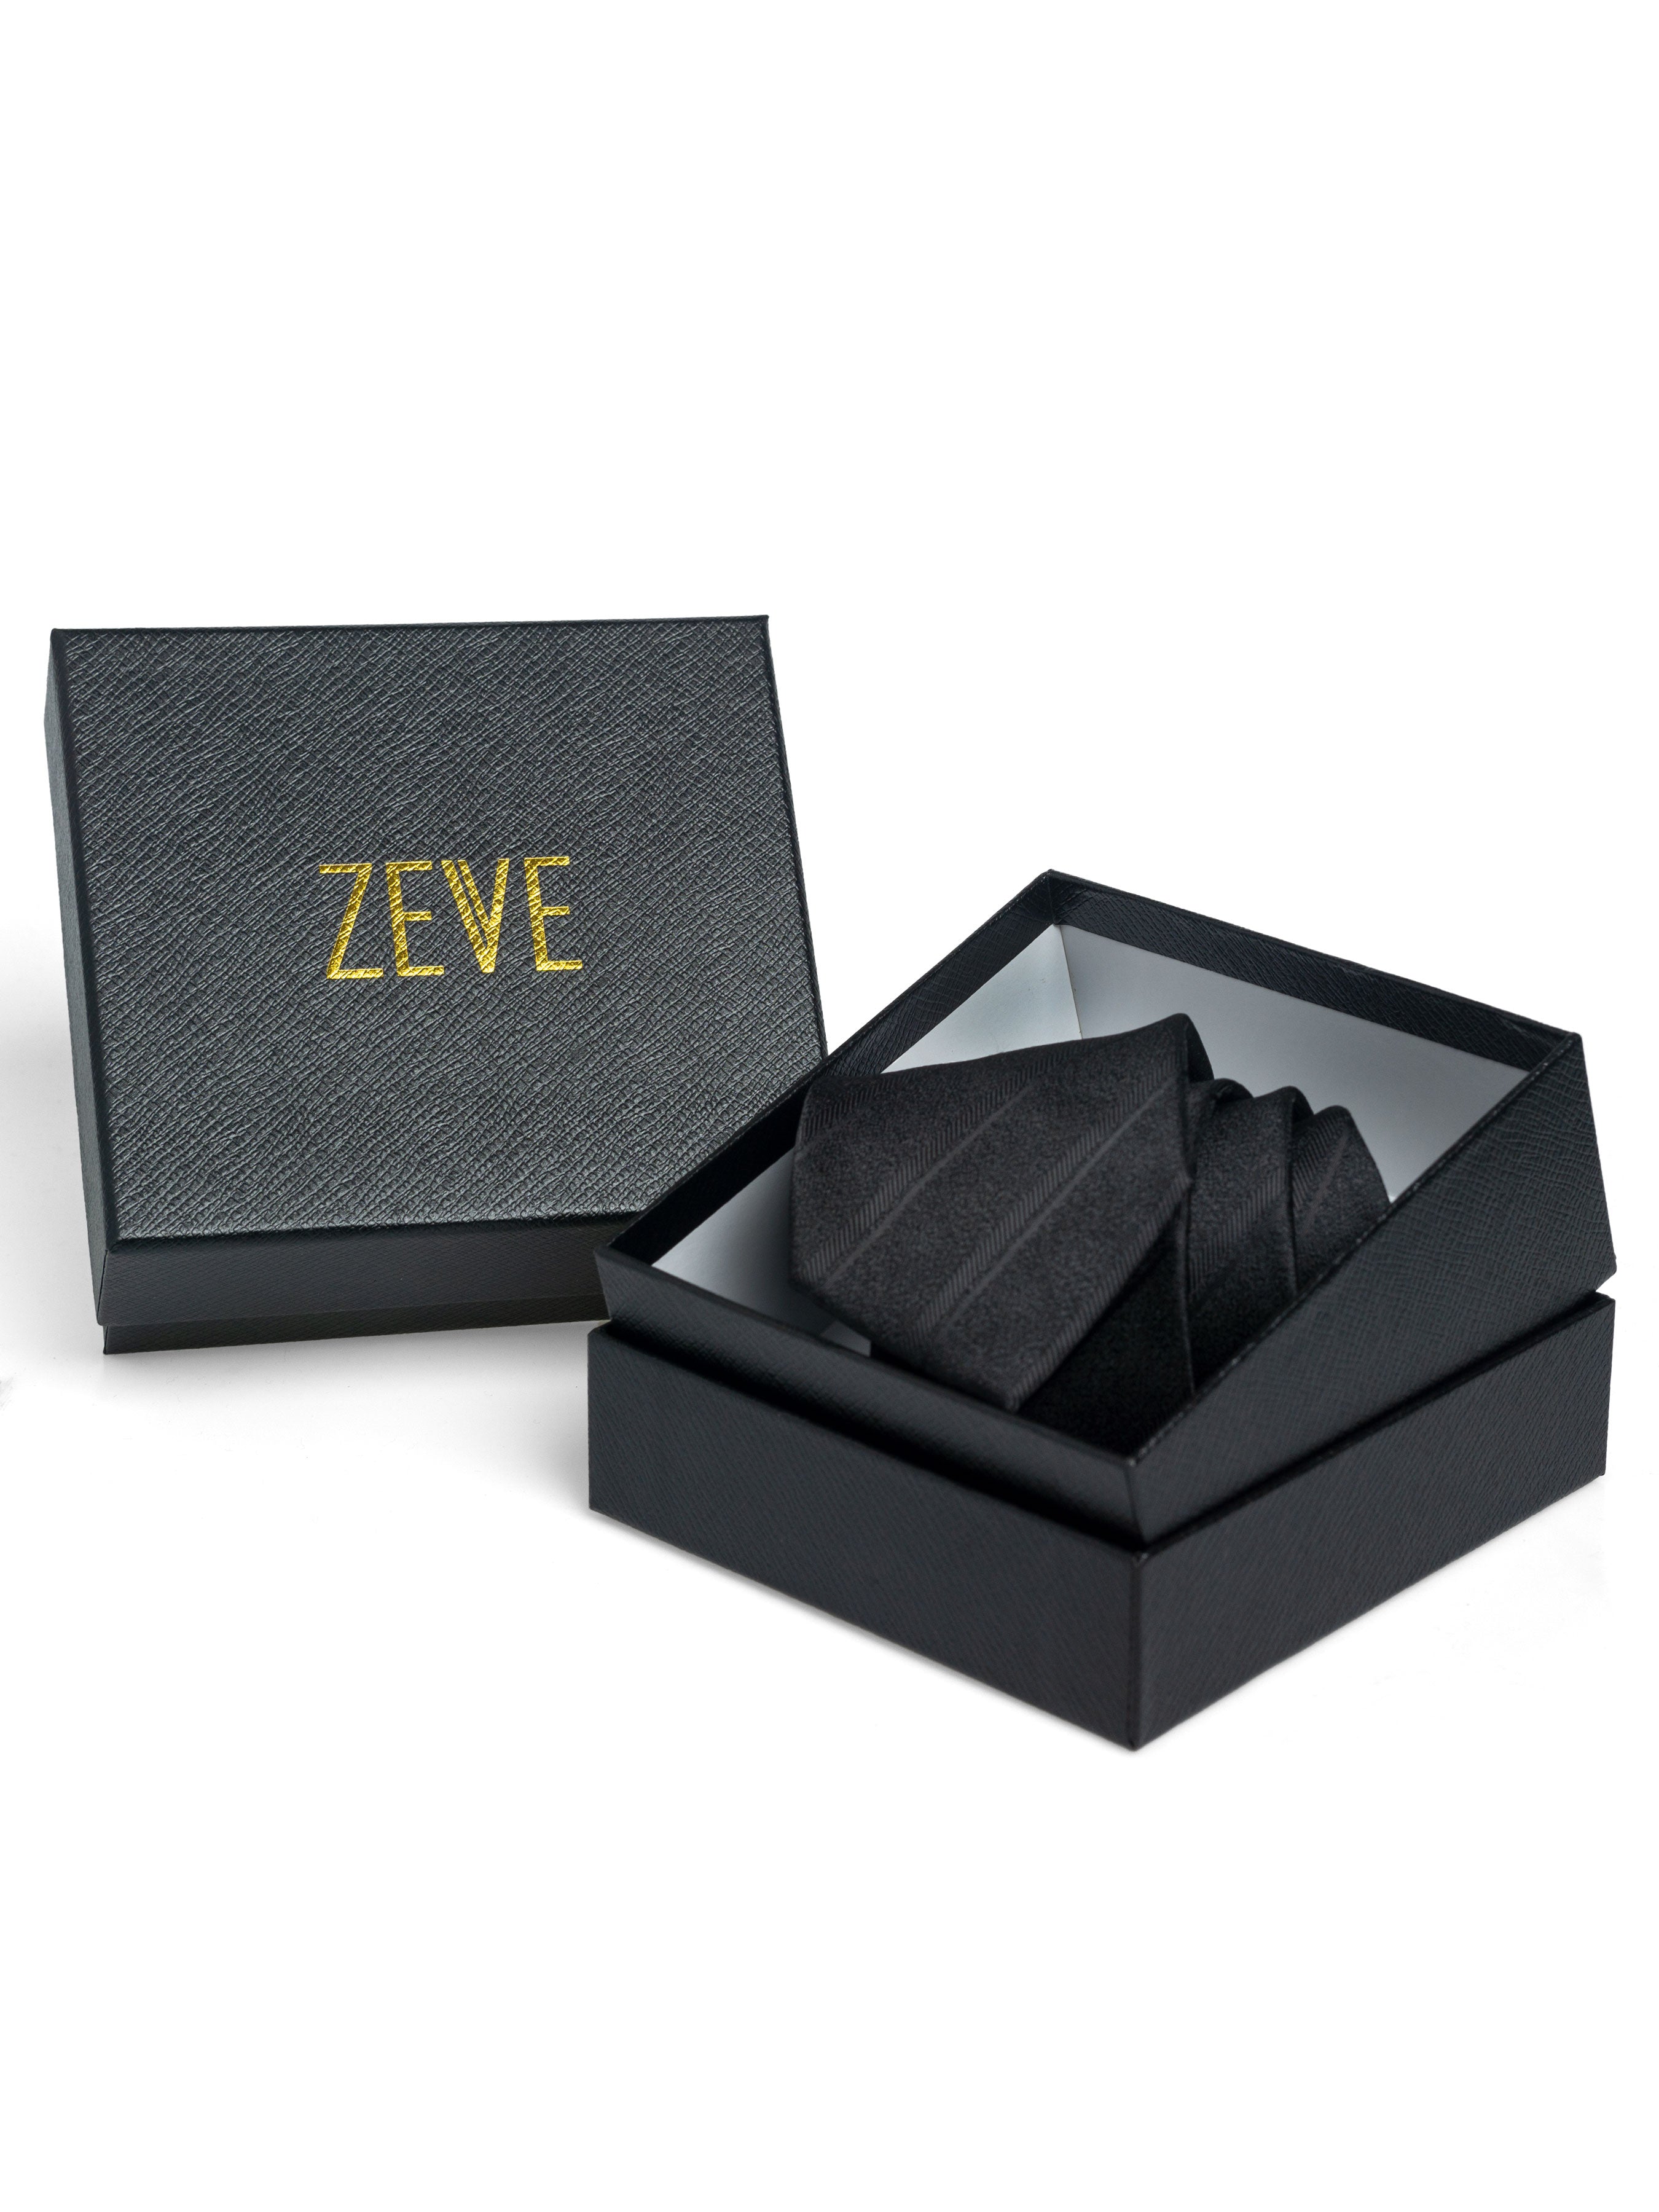 Medallion Tie - Copper - Zeve Shoes